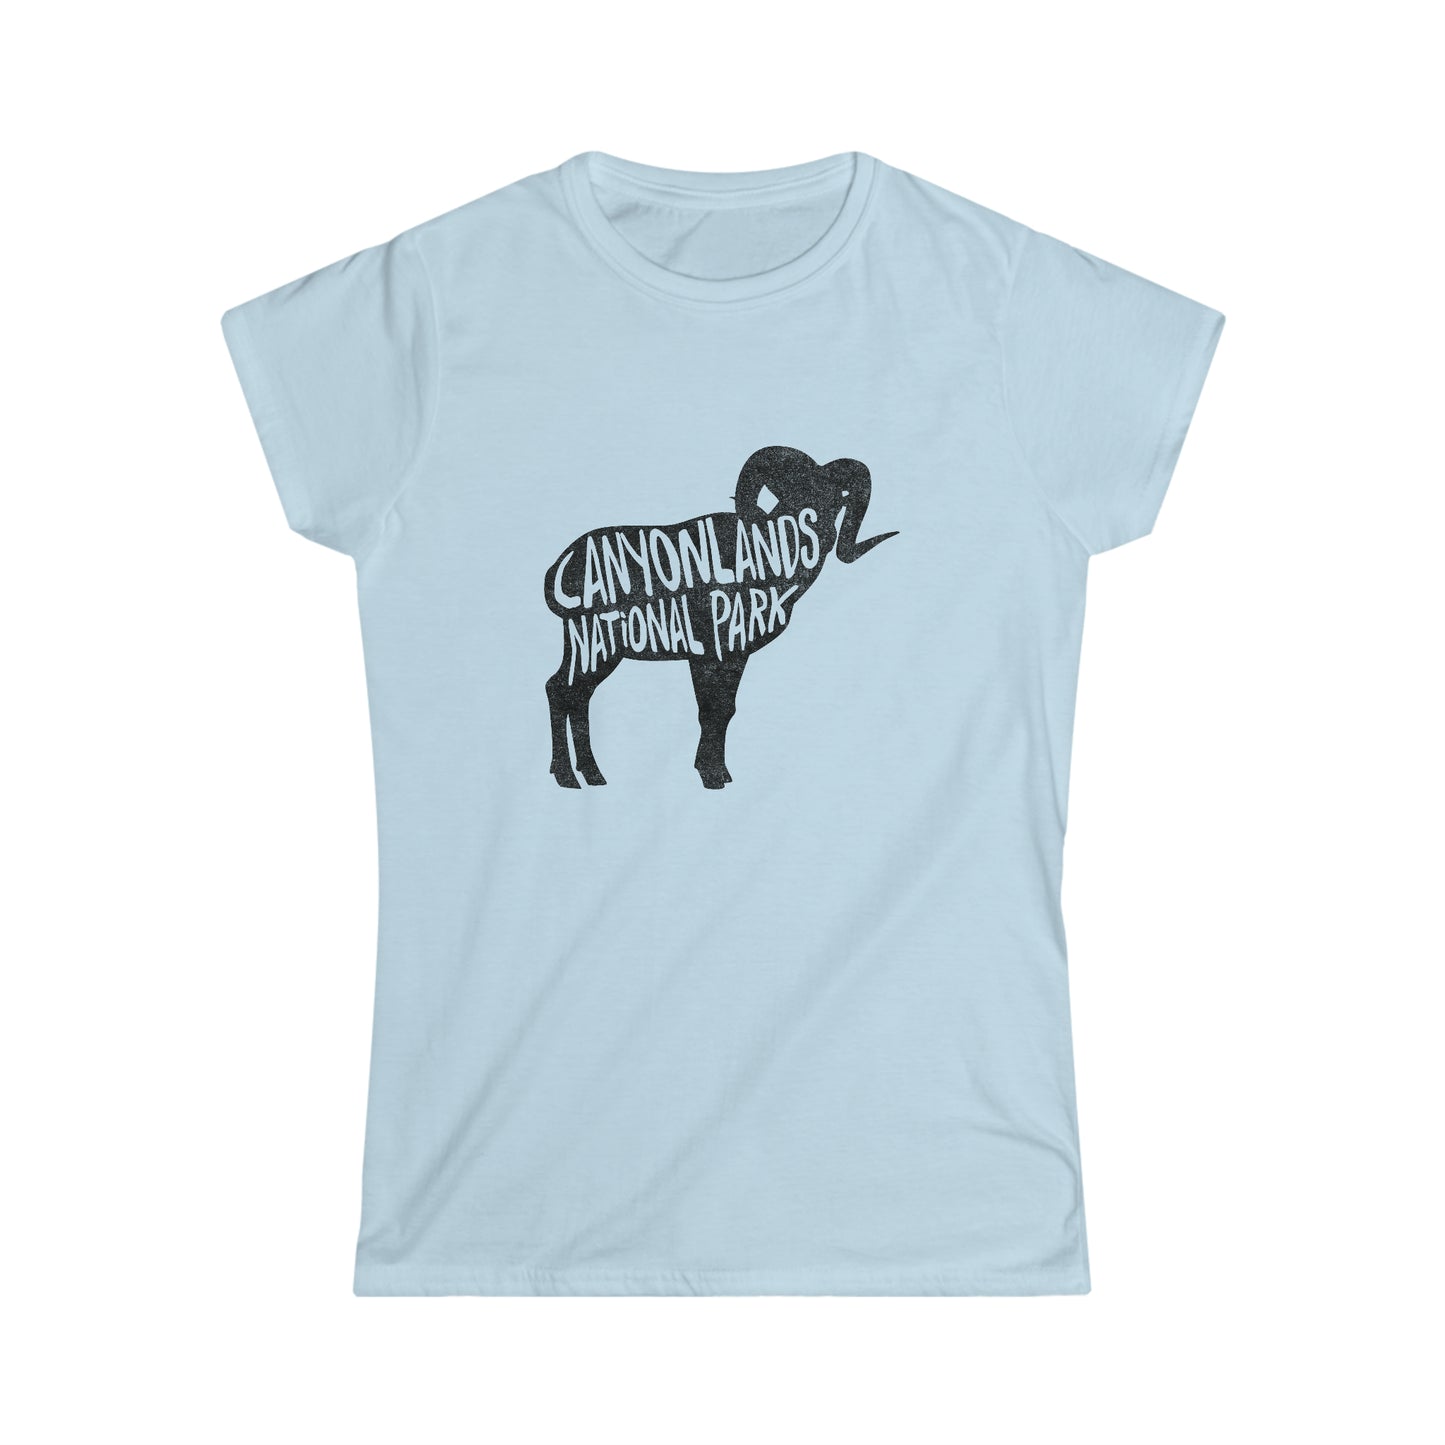 Canyonlands National Park Women's T-Shirt - Bighorn Sheep